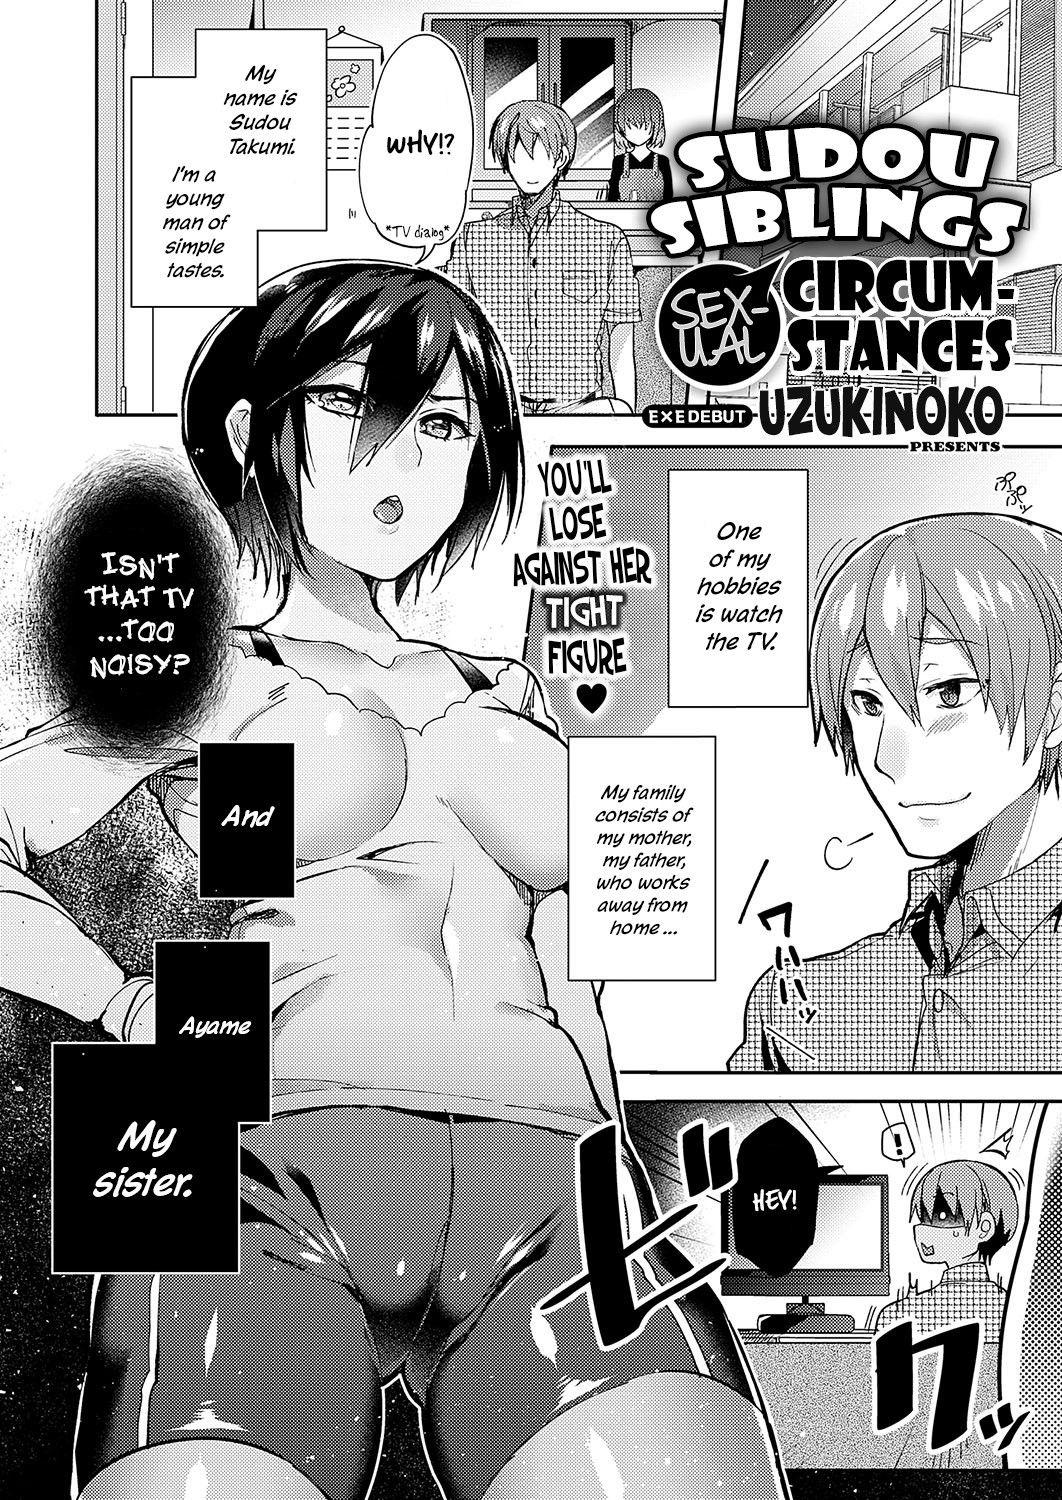 Sudou Ie No Seijijou | Sudou Siblings Sexual Circumstances 0